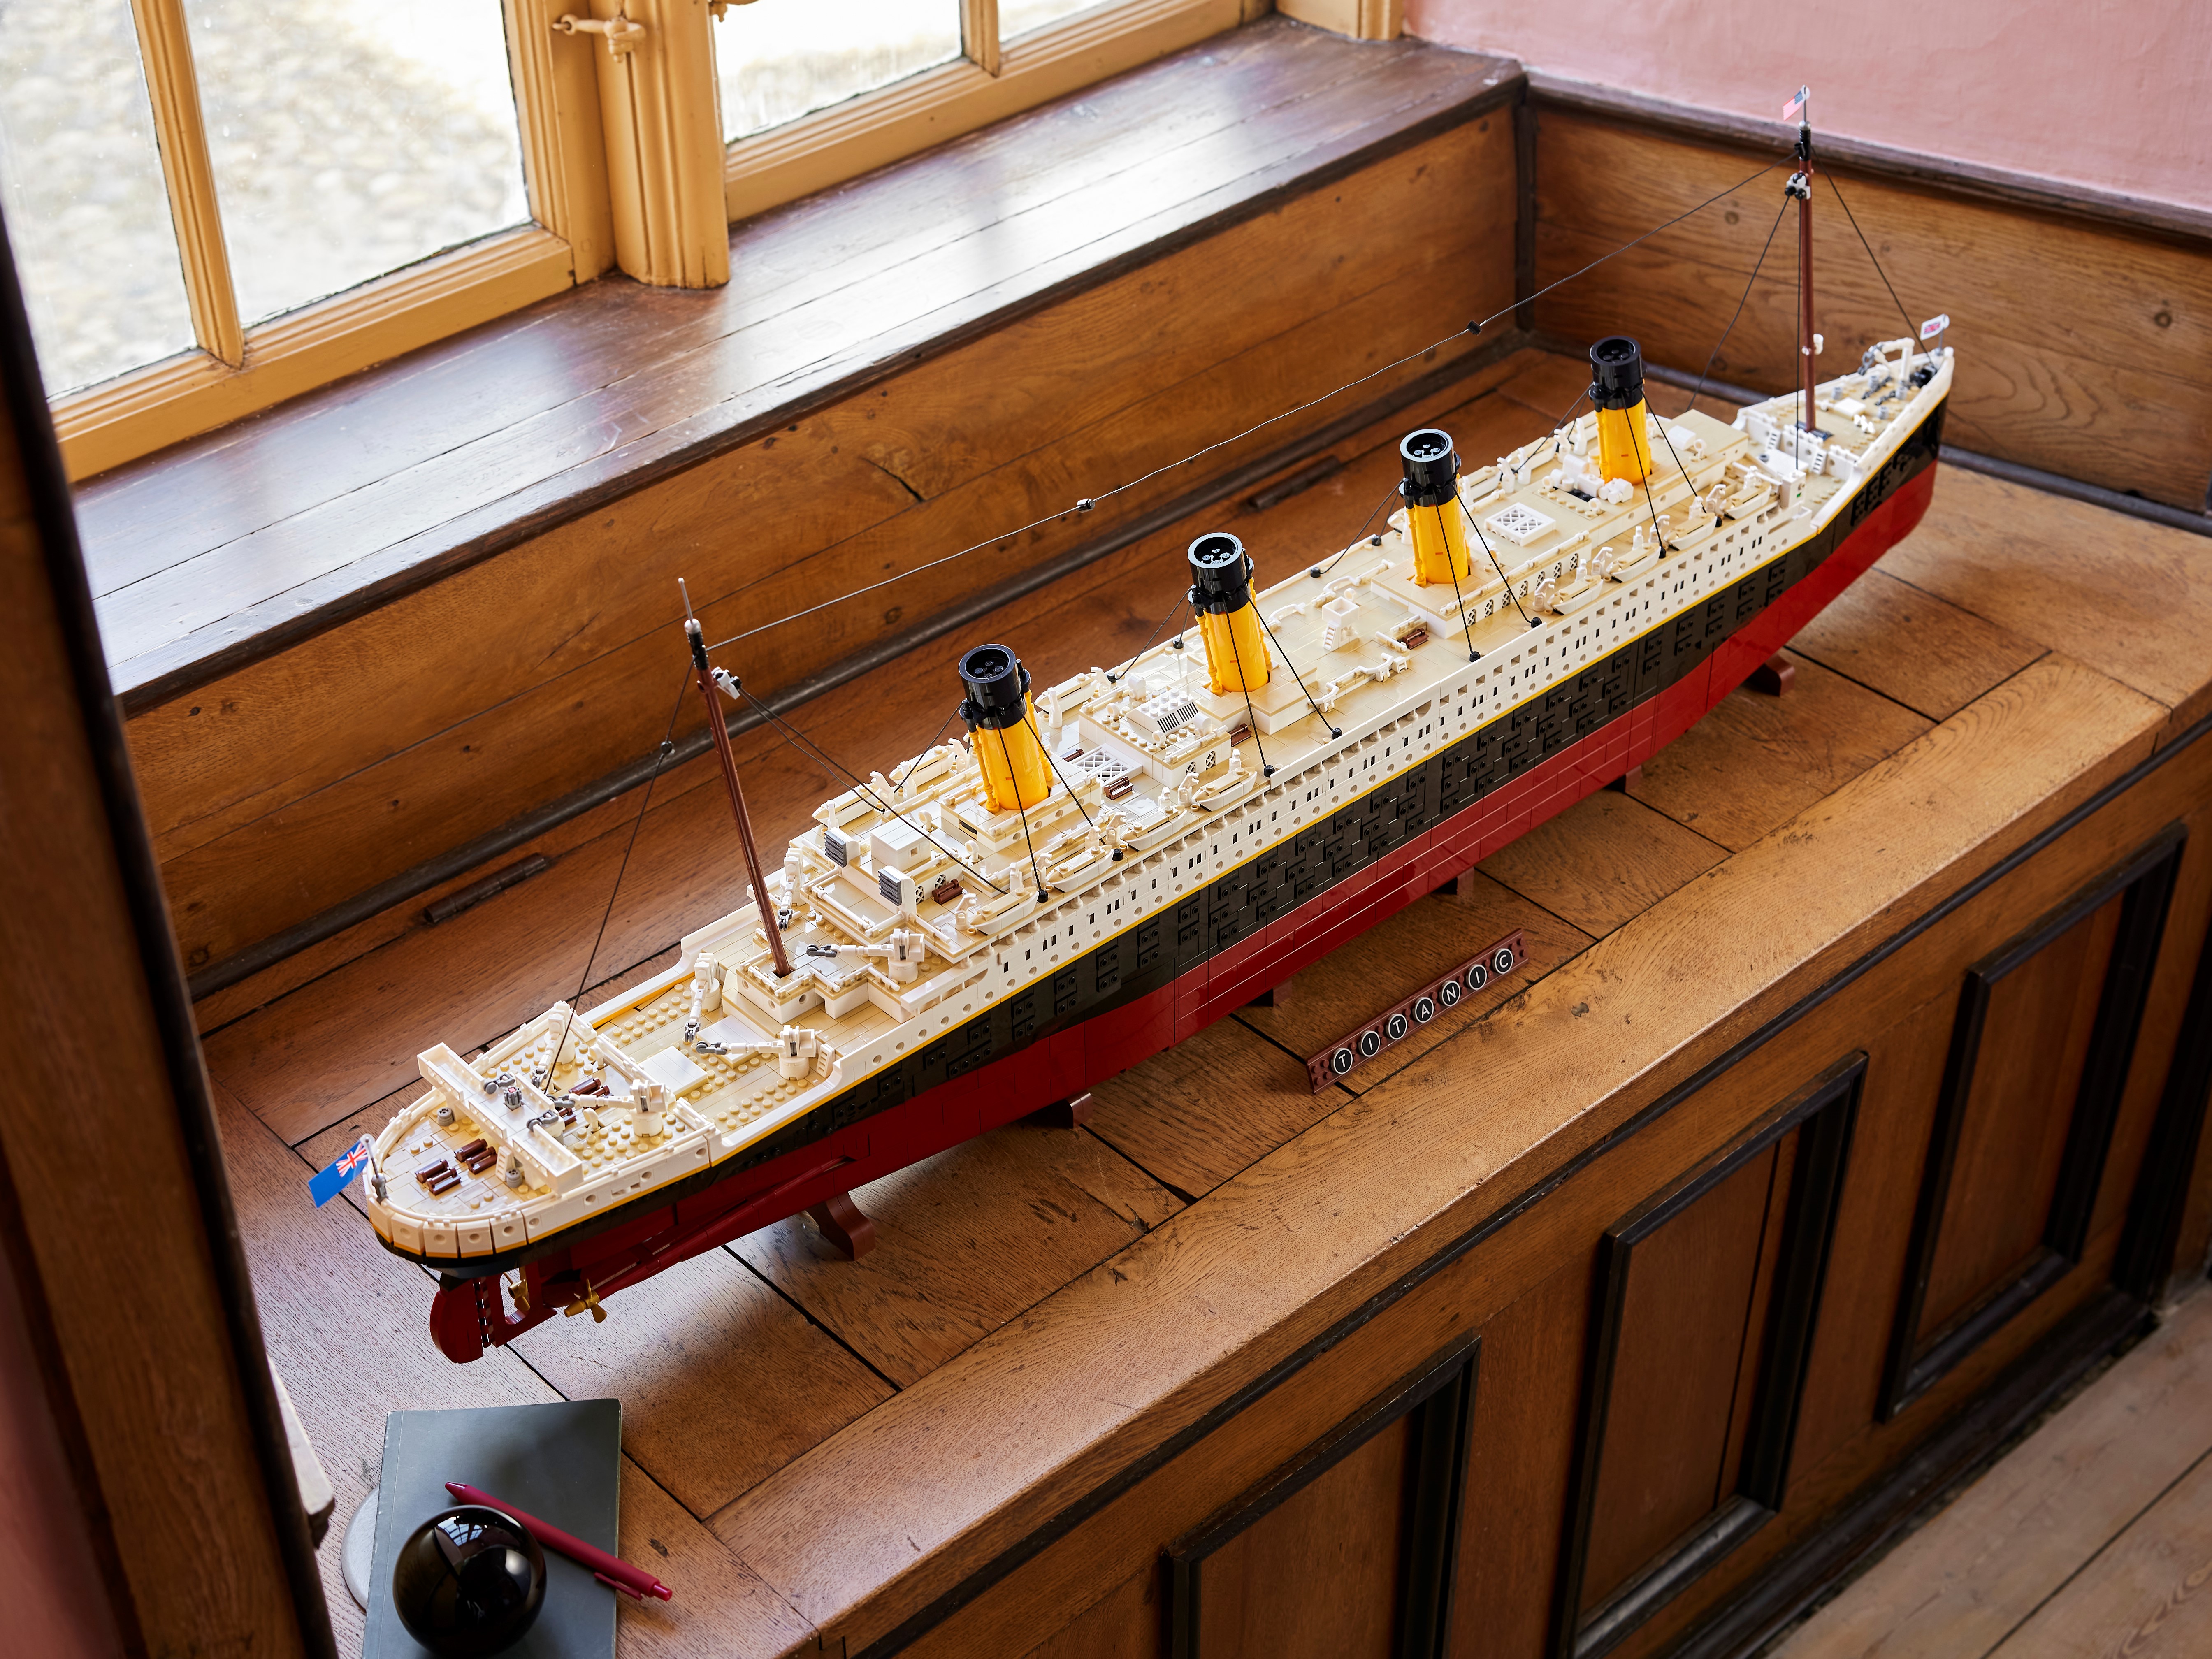 LEGO Titanic, presentato il set del famoso transatlantico lungo più di un  metro